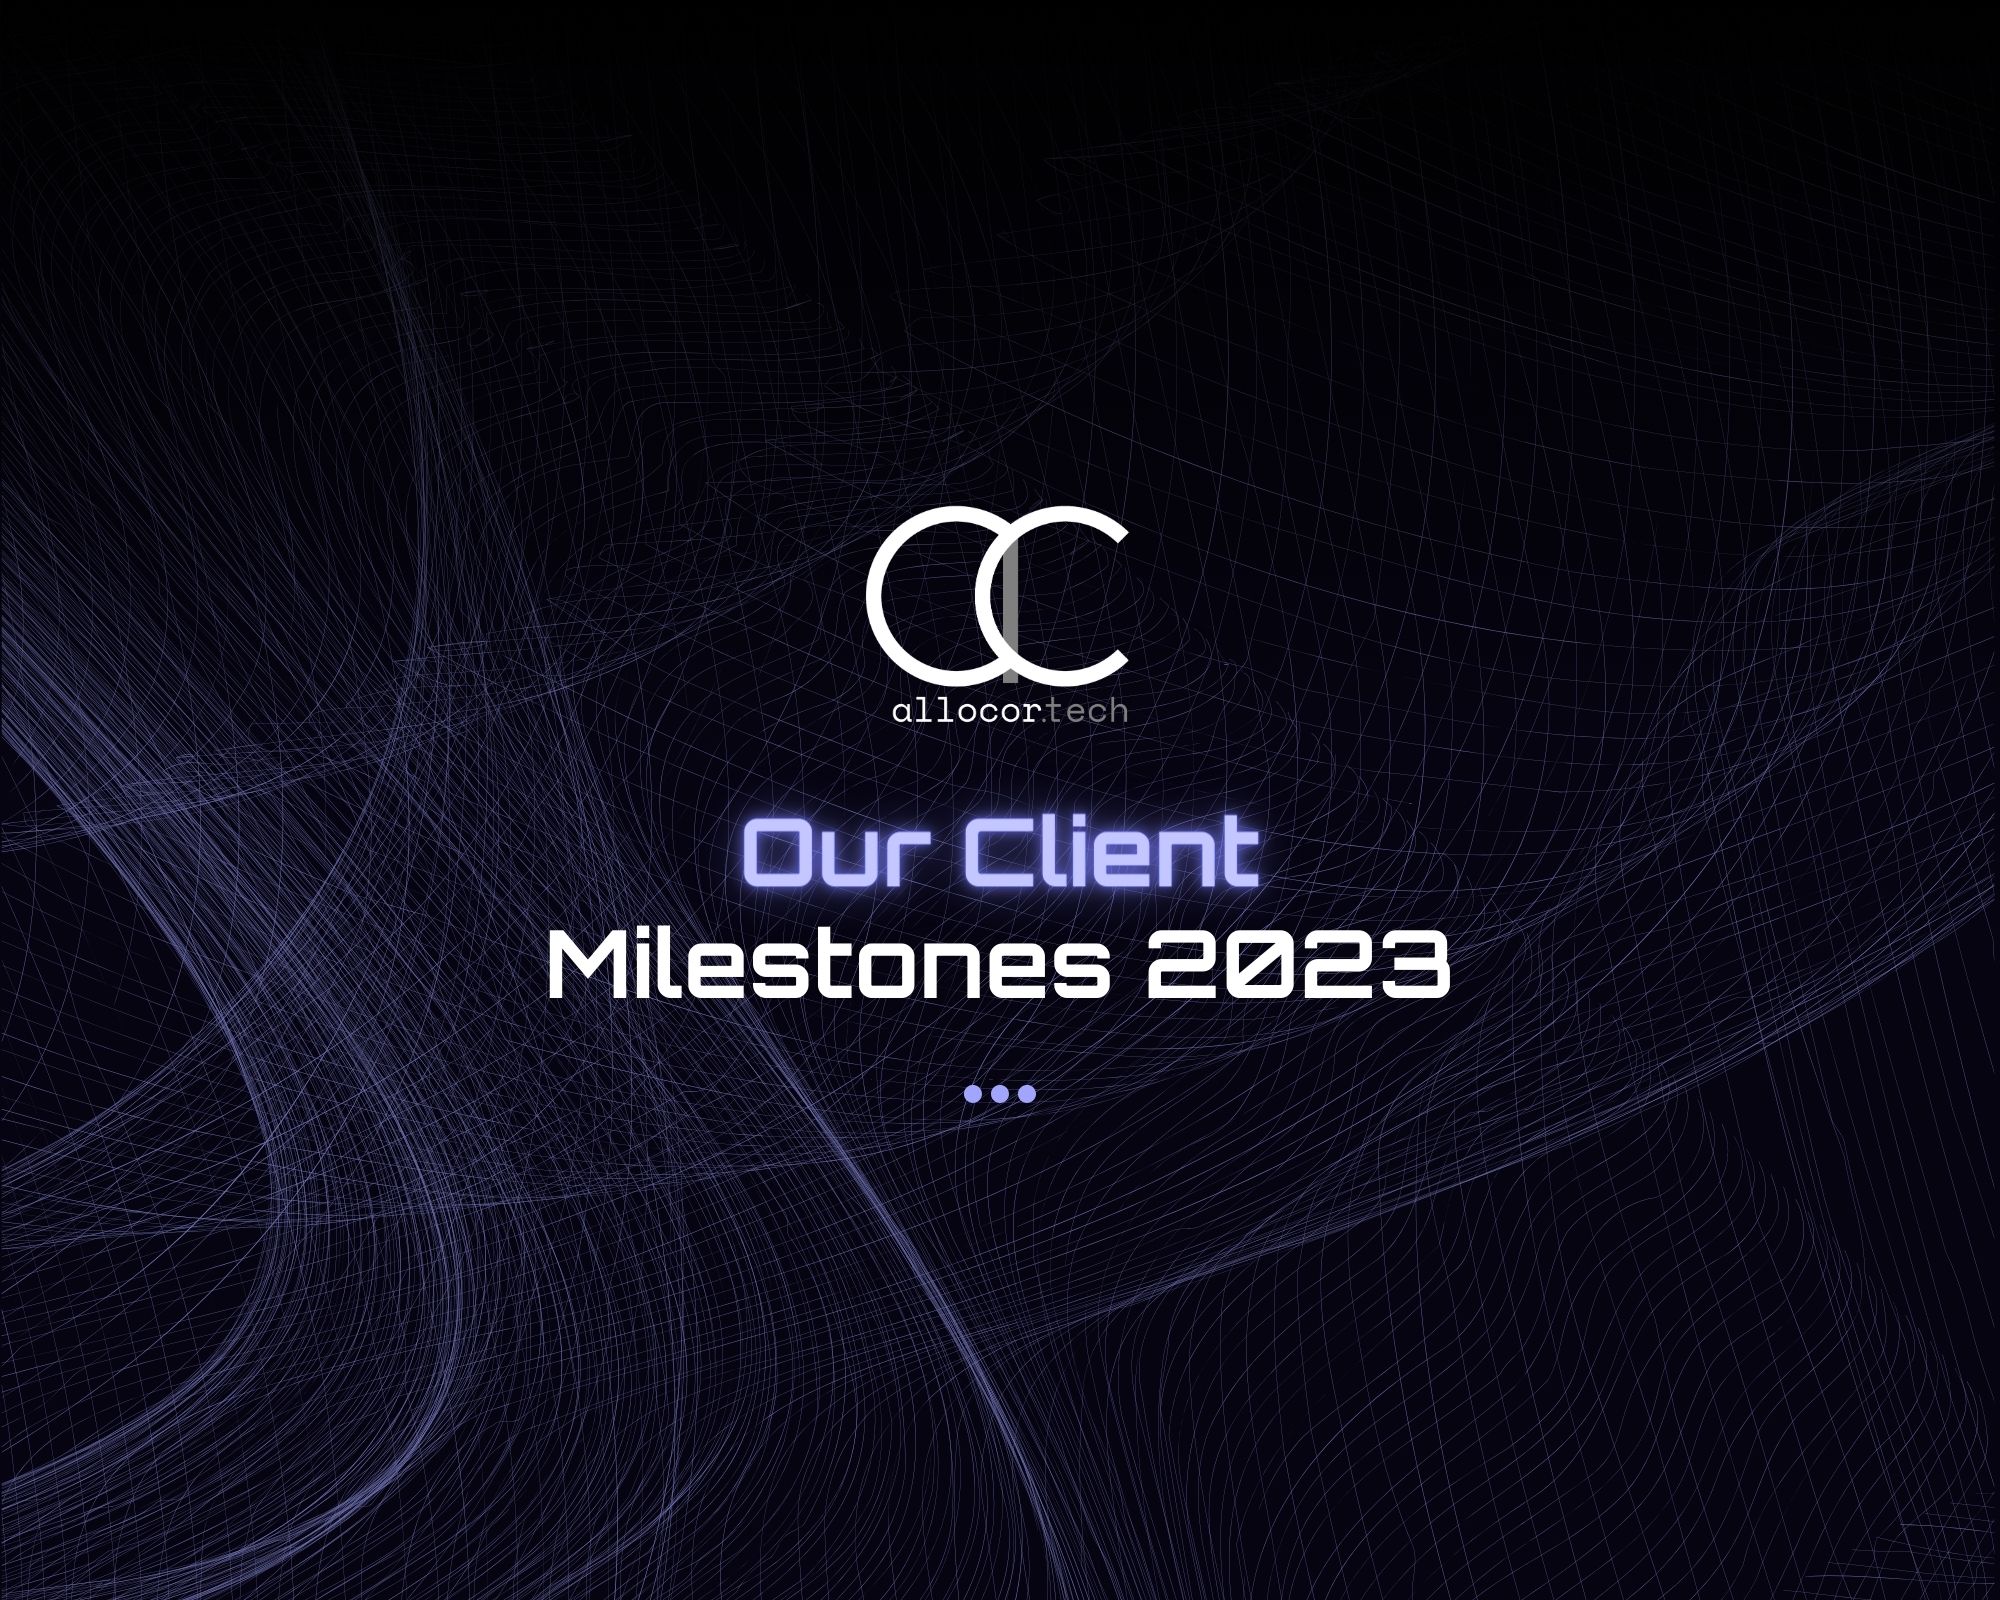 Our Client Milestones 2023